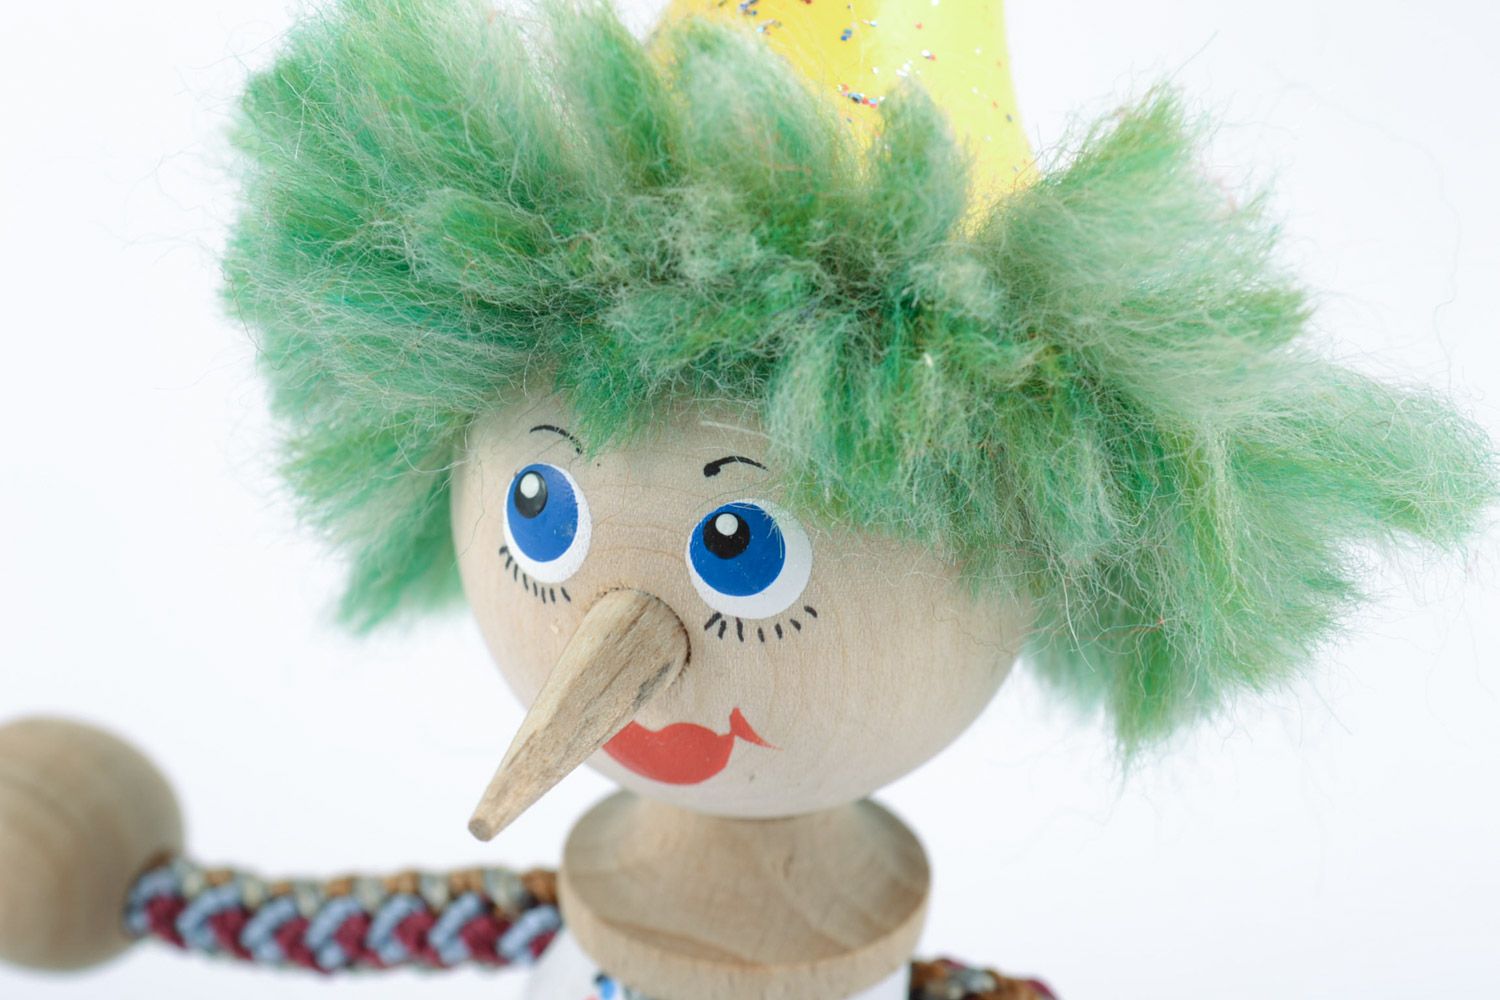 Деревянная игрушка клоун с острым носом ручной работы расписанная красками фото 3